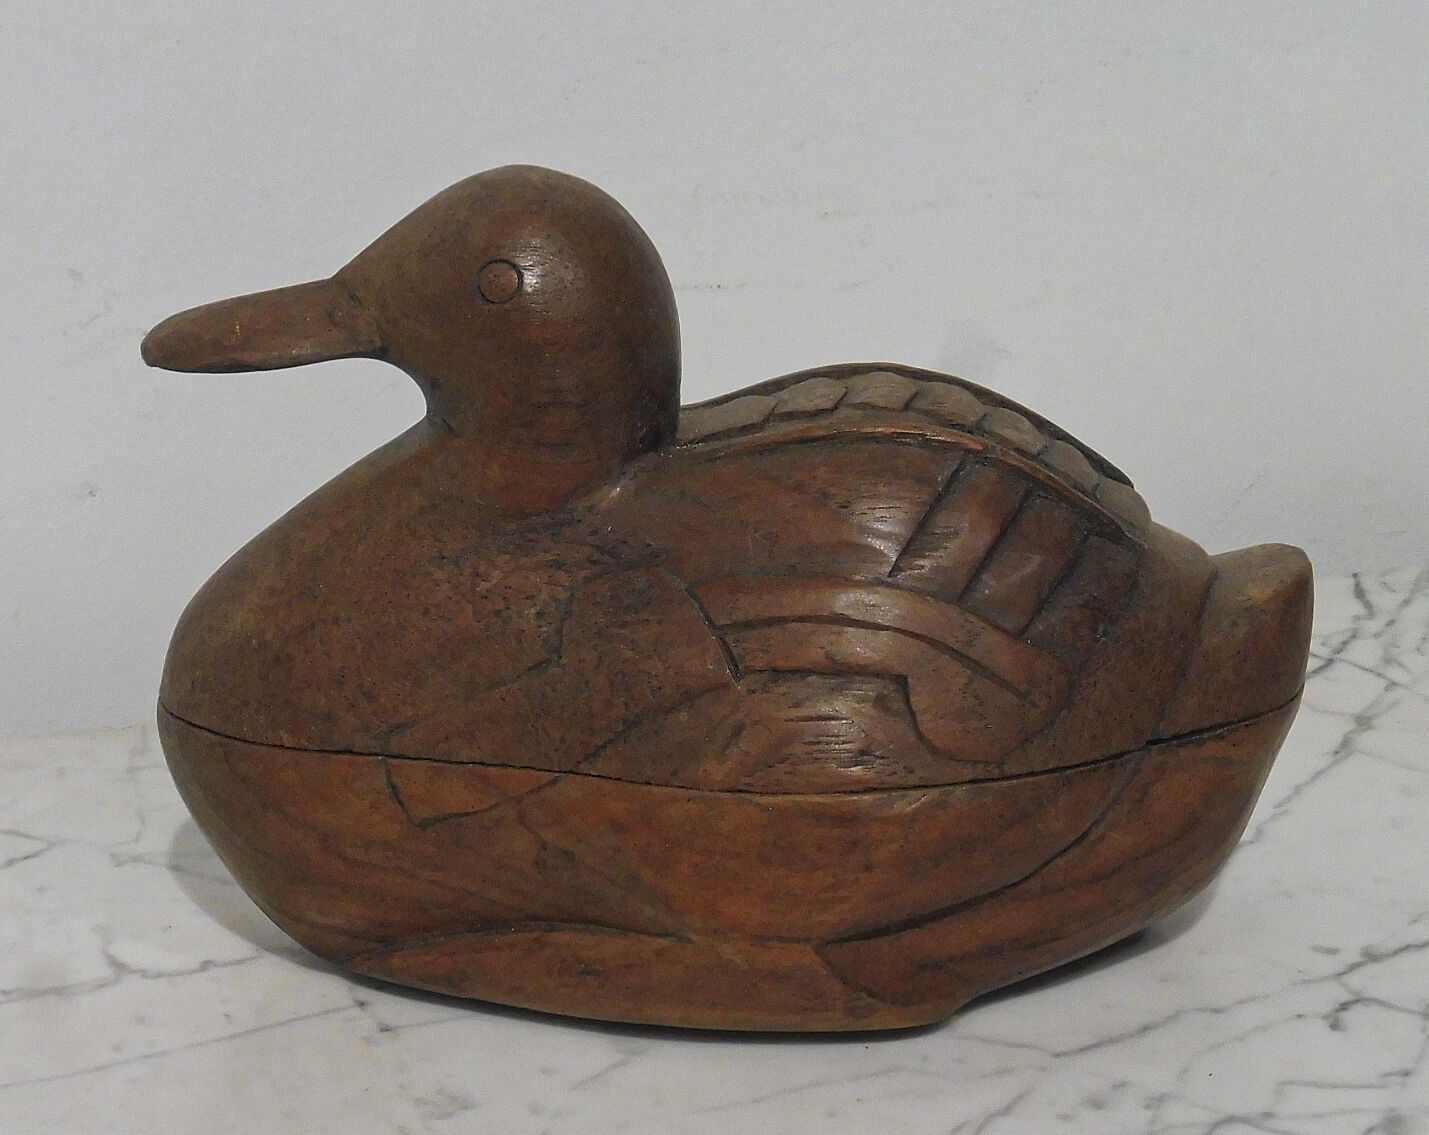 Null Boîte zoomorphe en bois sculpté représentant un canard
H. 15 cm L. 21 cm